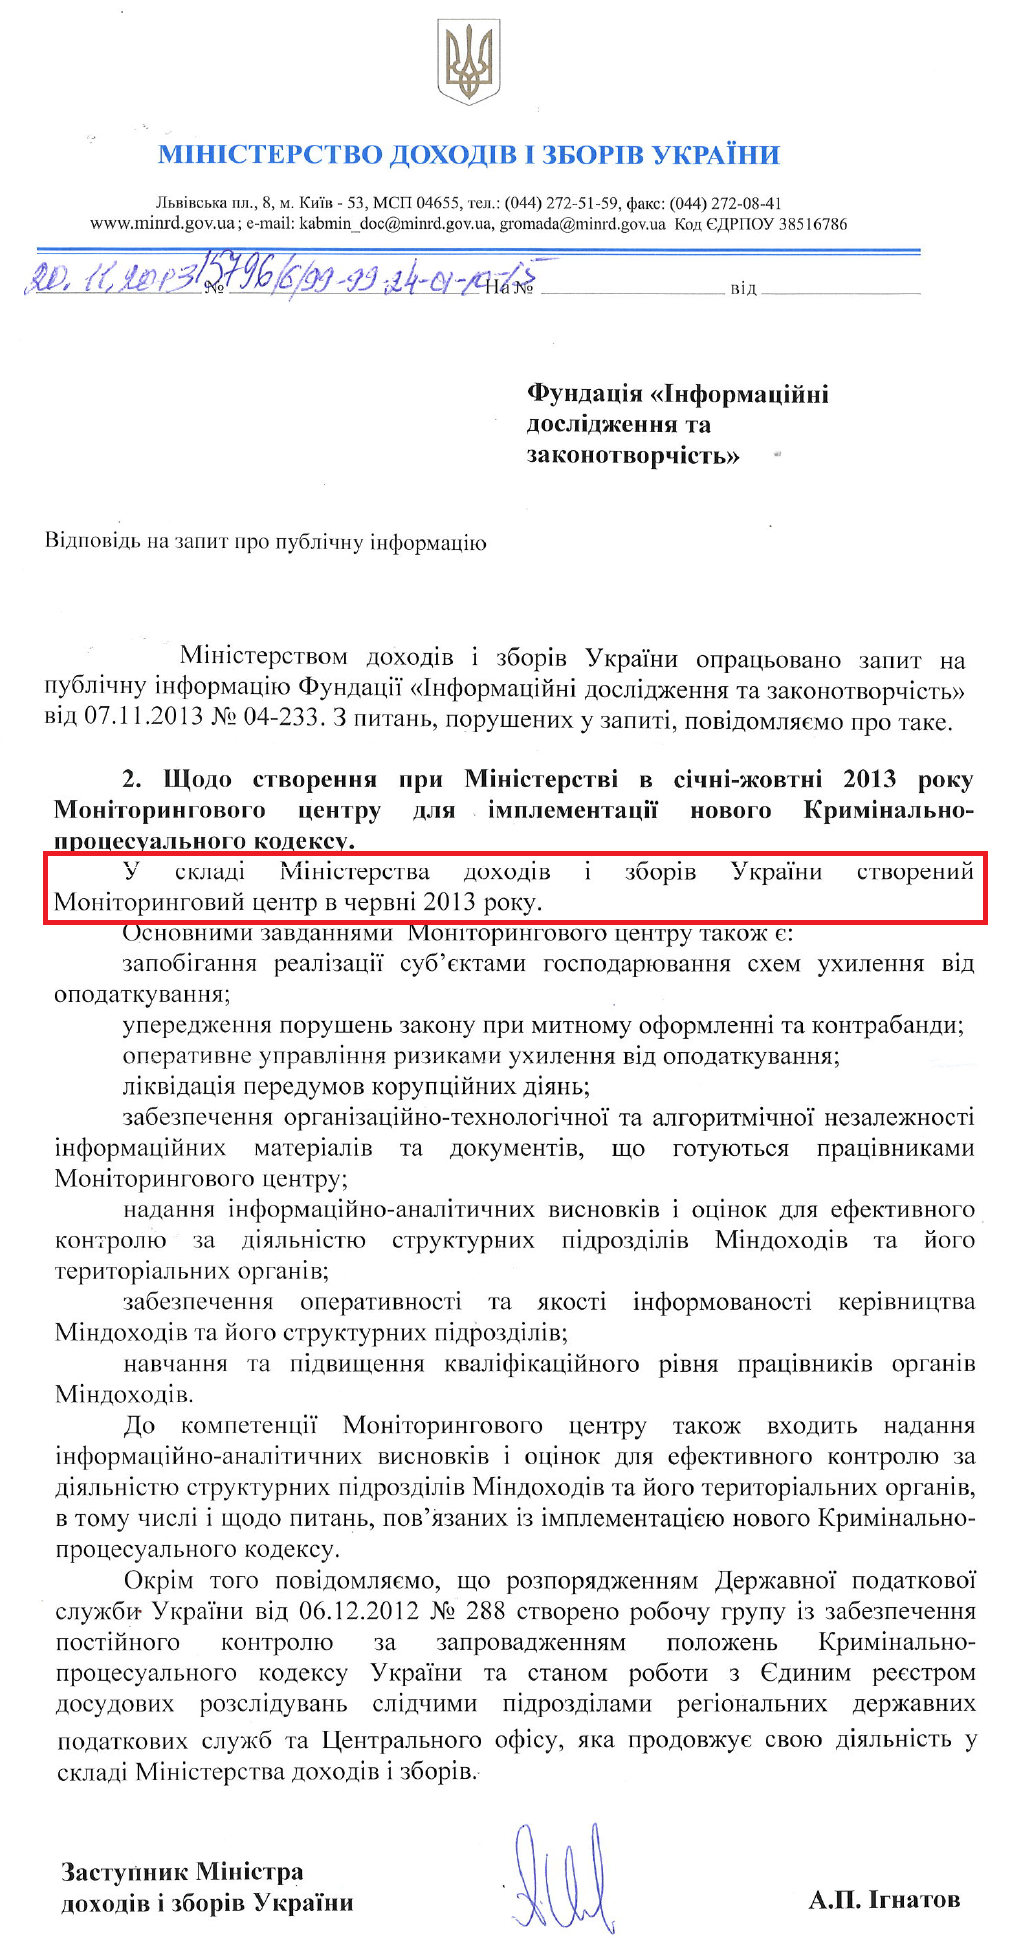 Лист Заступника Міністра доходів і зборів України А.П.Ігнатова від 20 листопада 2013 року